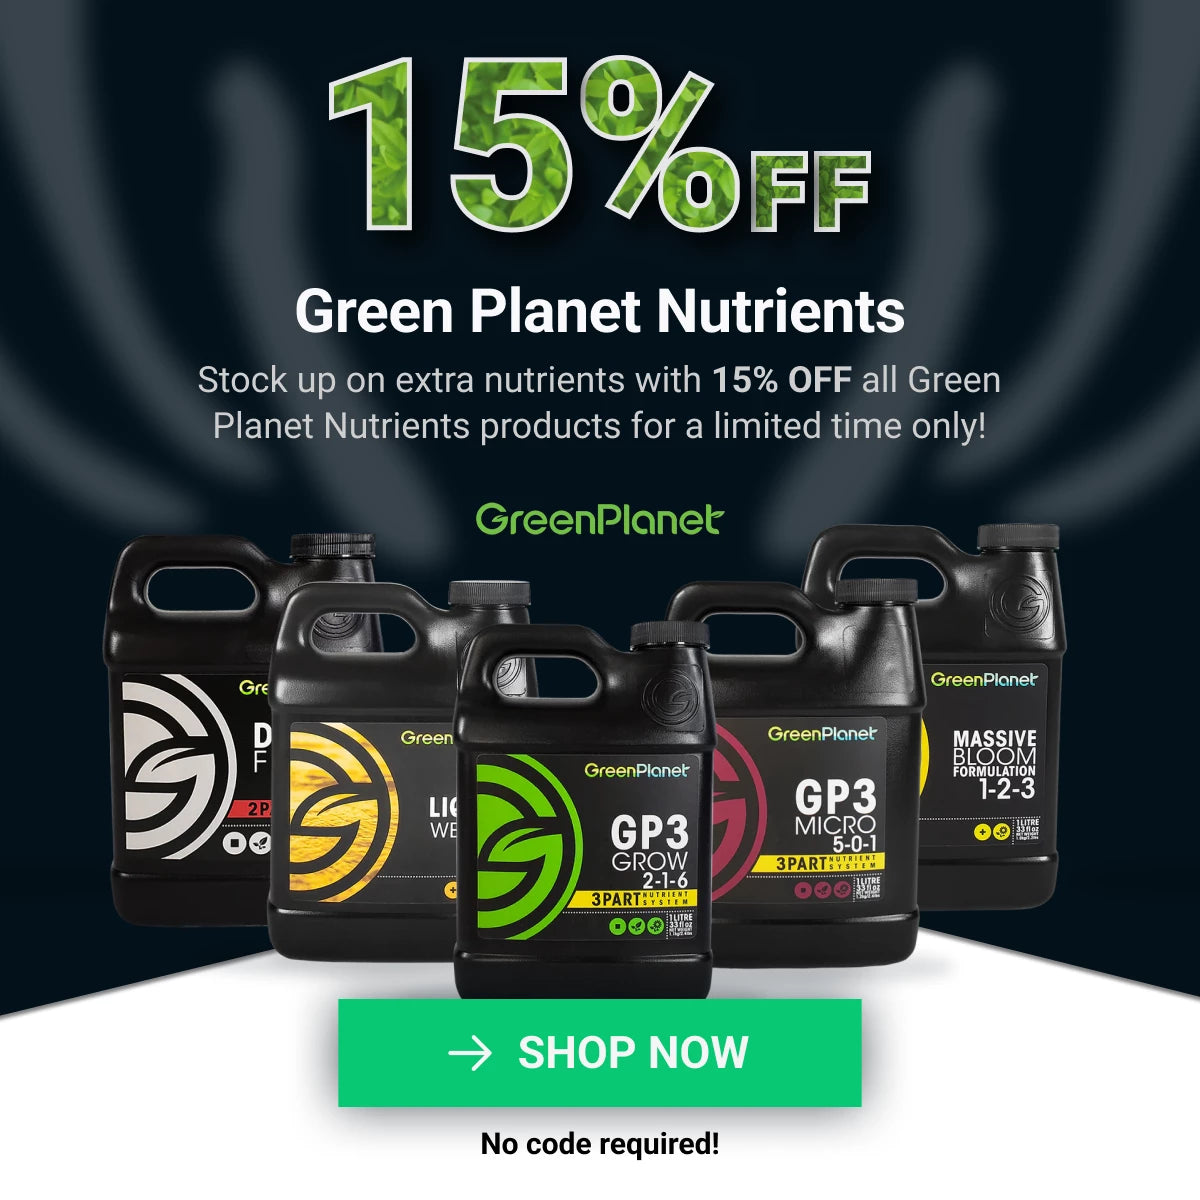 GreenPlanet Nutrients